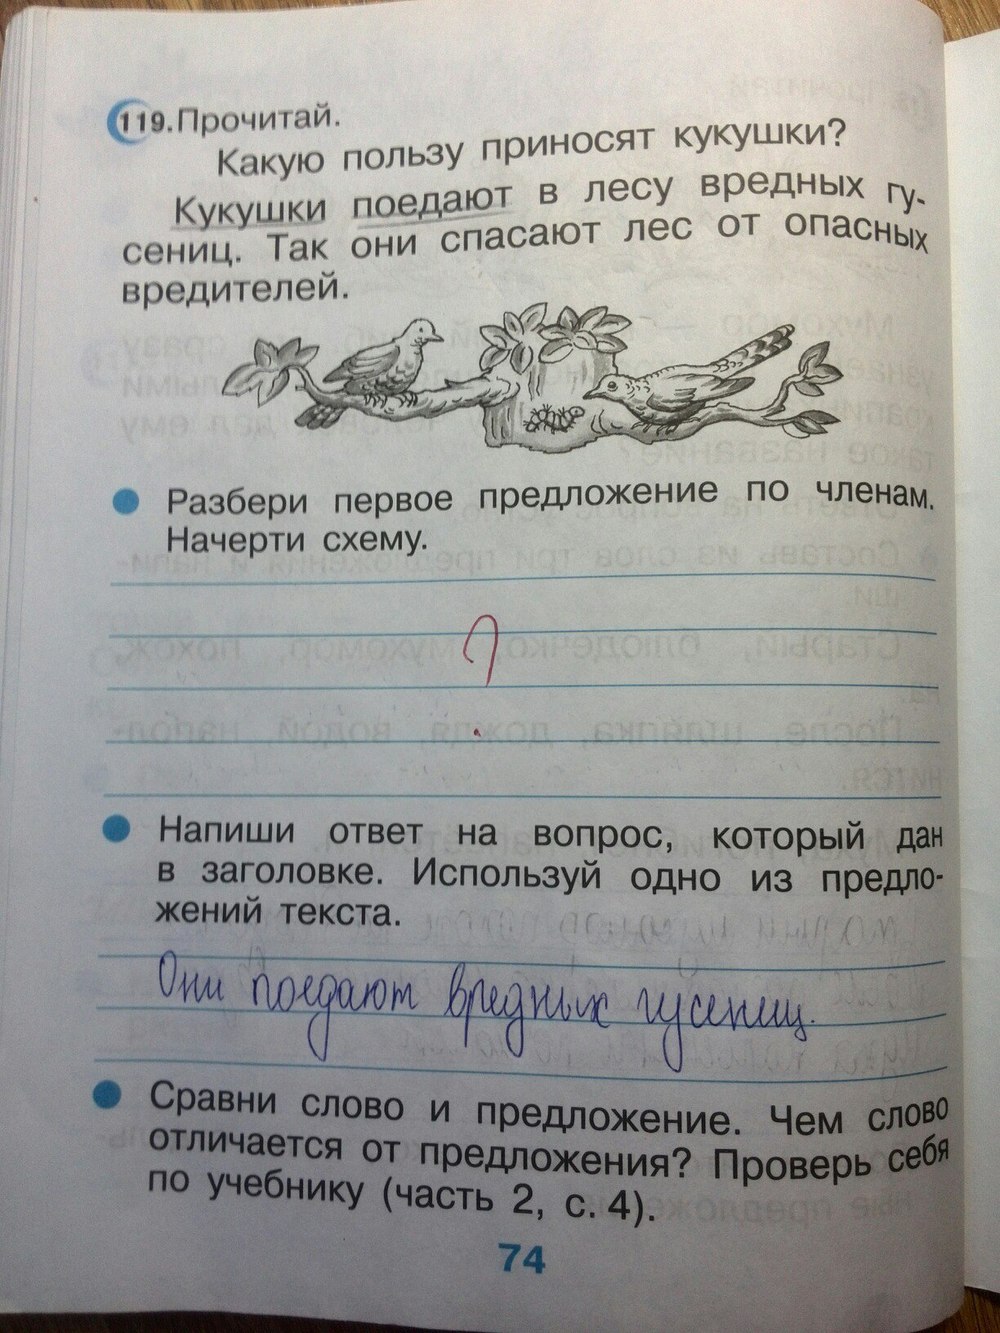 Русский страница 74 класс 2 часть